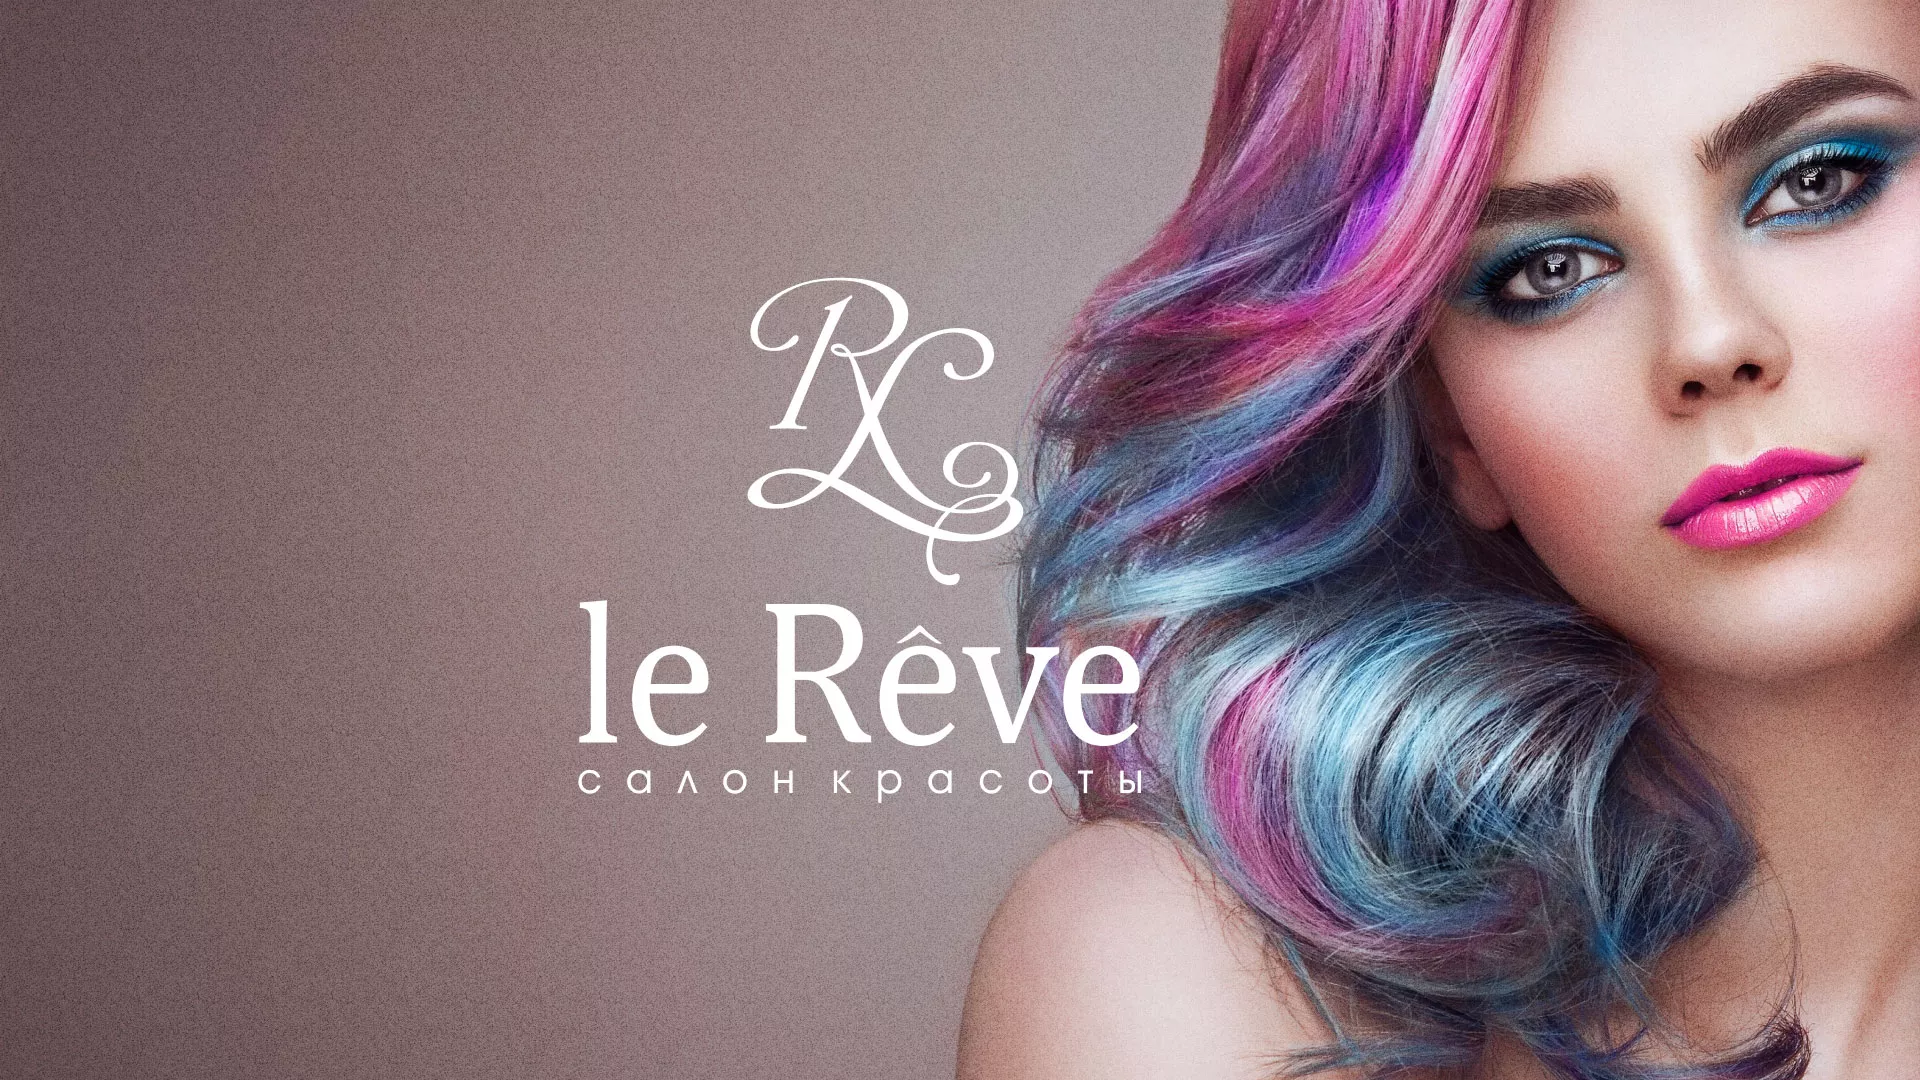 Создание сайта для салона красоты «Le Reve» в Сергиевом Посаде